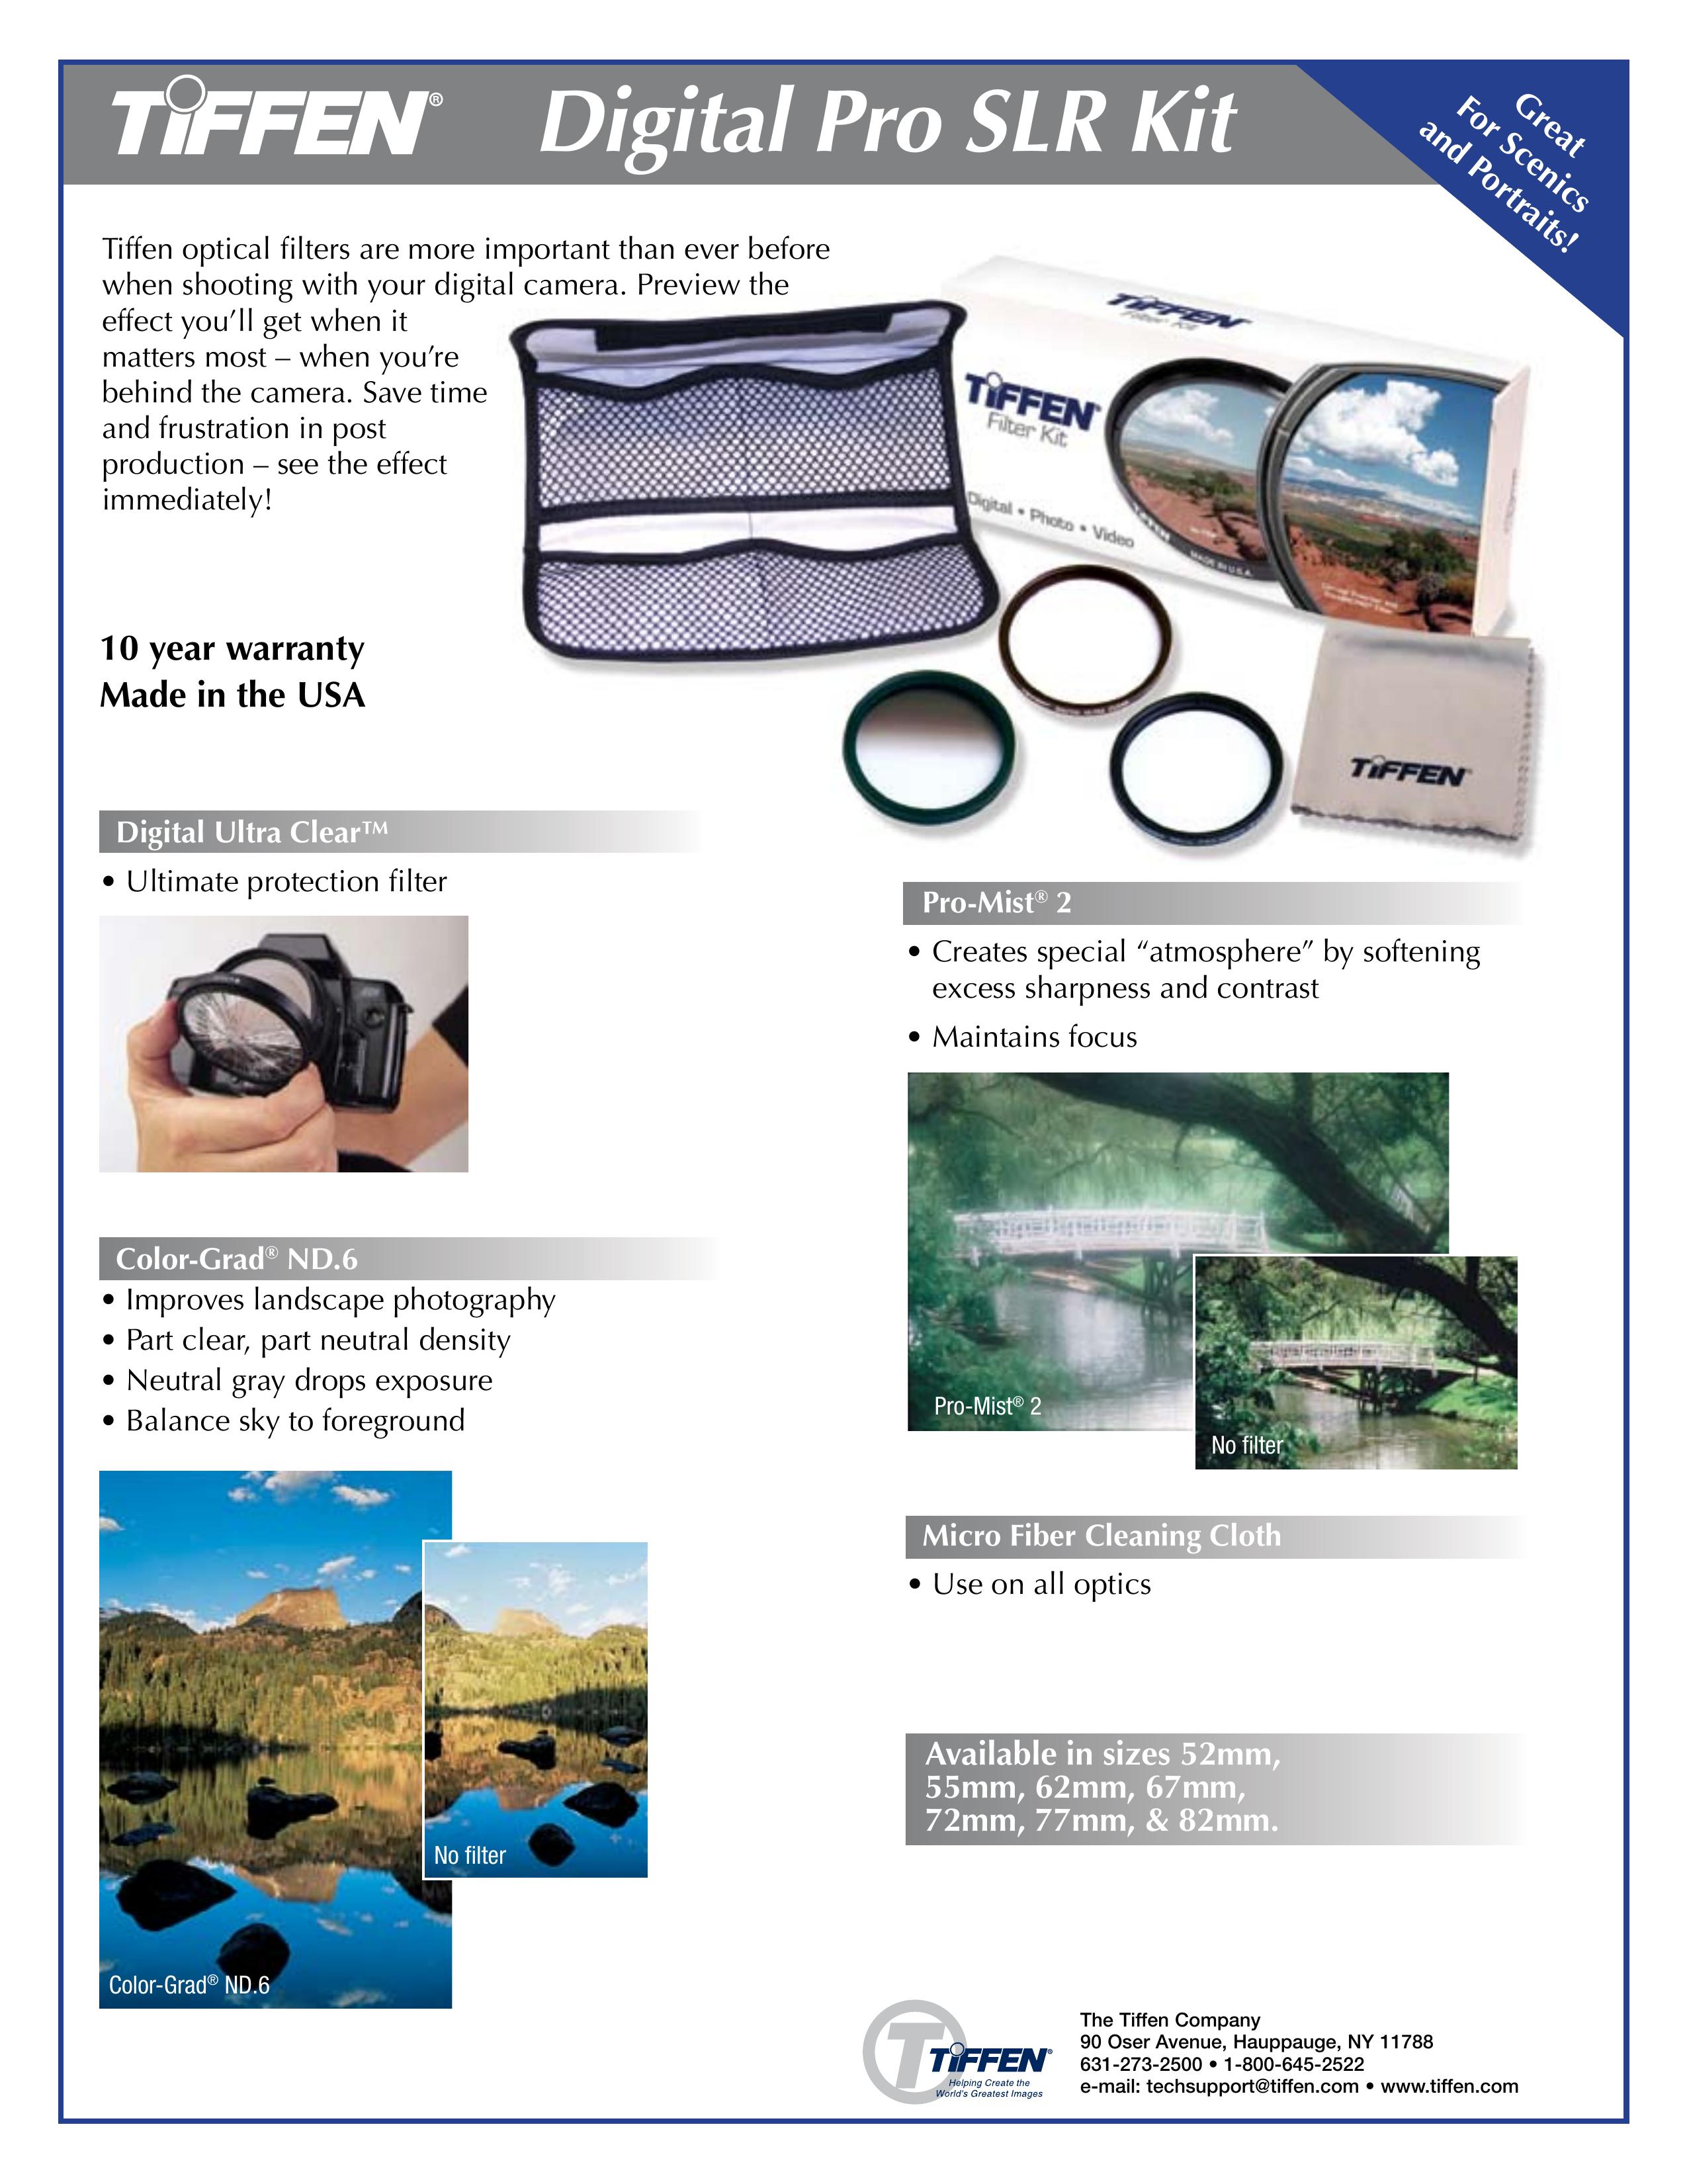 Tiffen Digital Pro SLR Kit Camera Accessories User Manual